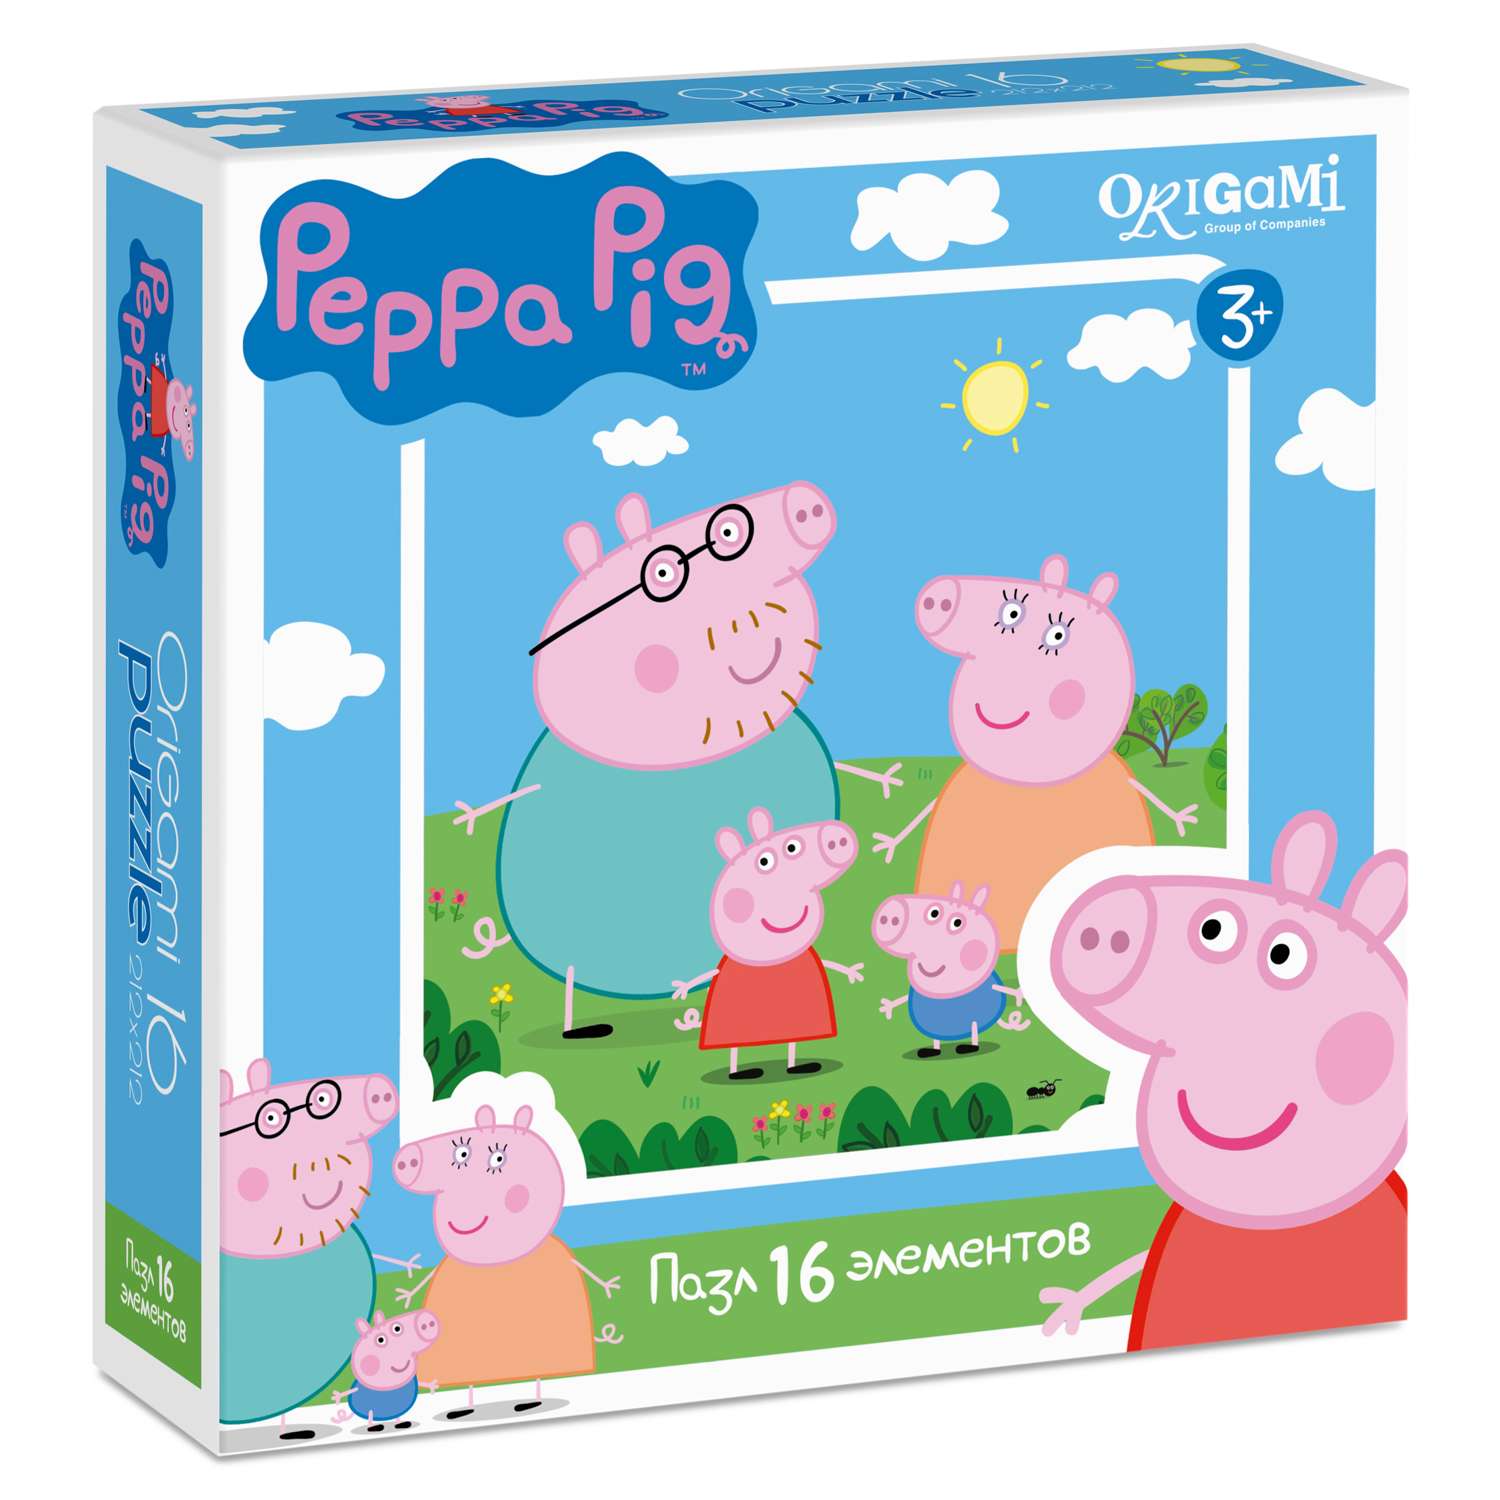 Пазлы ORIGAMI Peppa Pig 16 элементов в ассортименте - фото 2